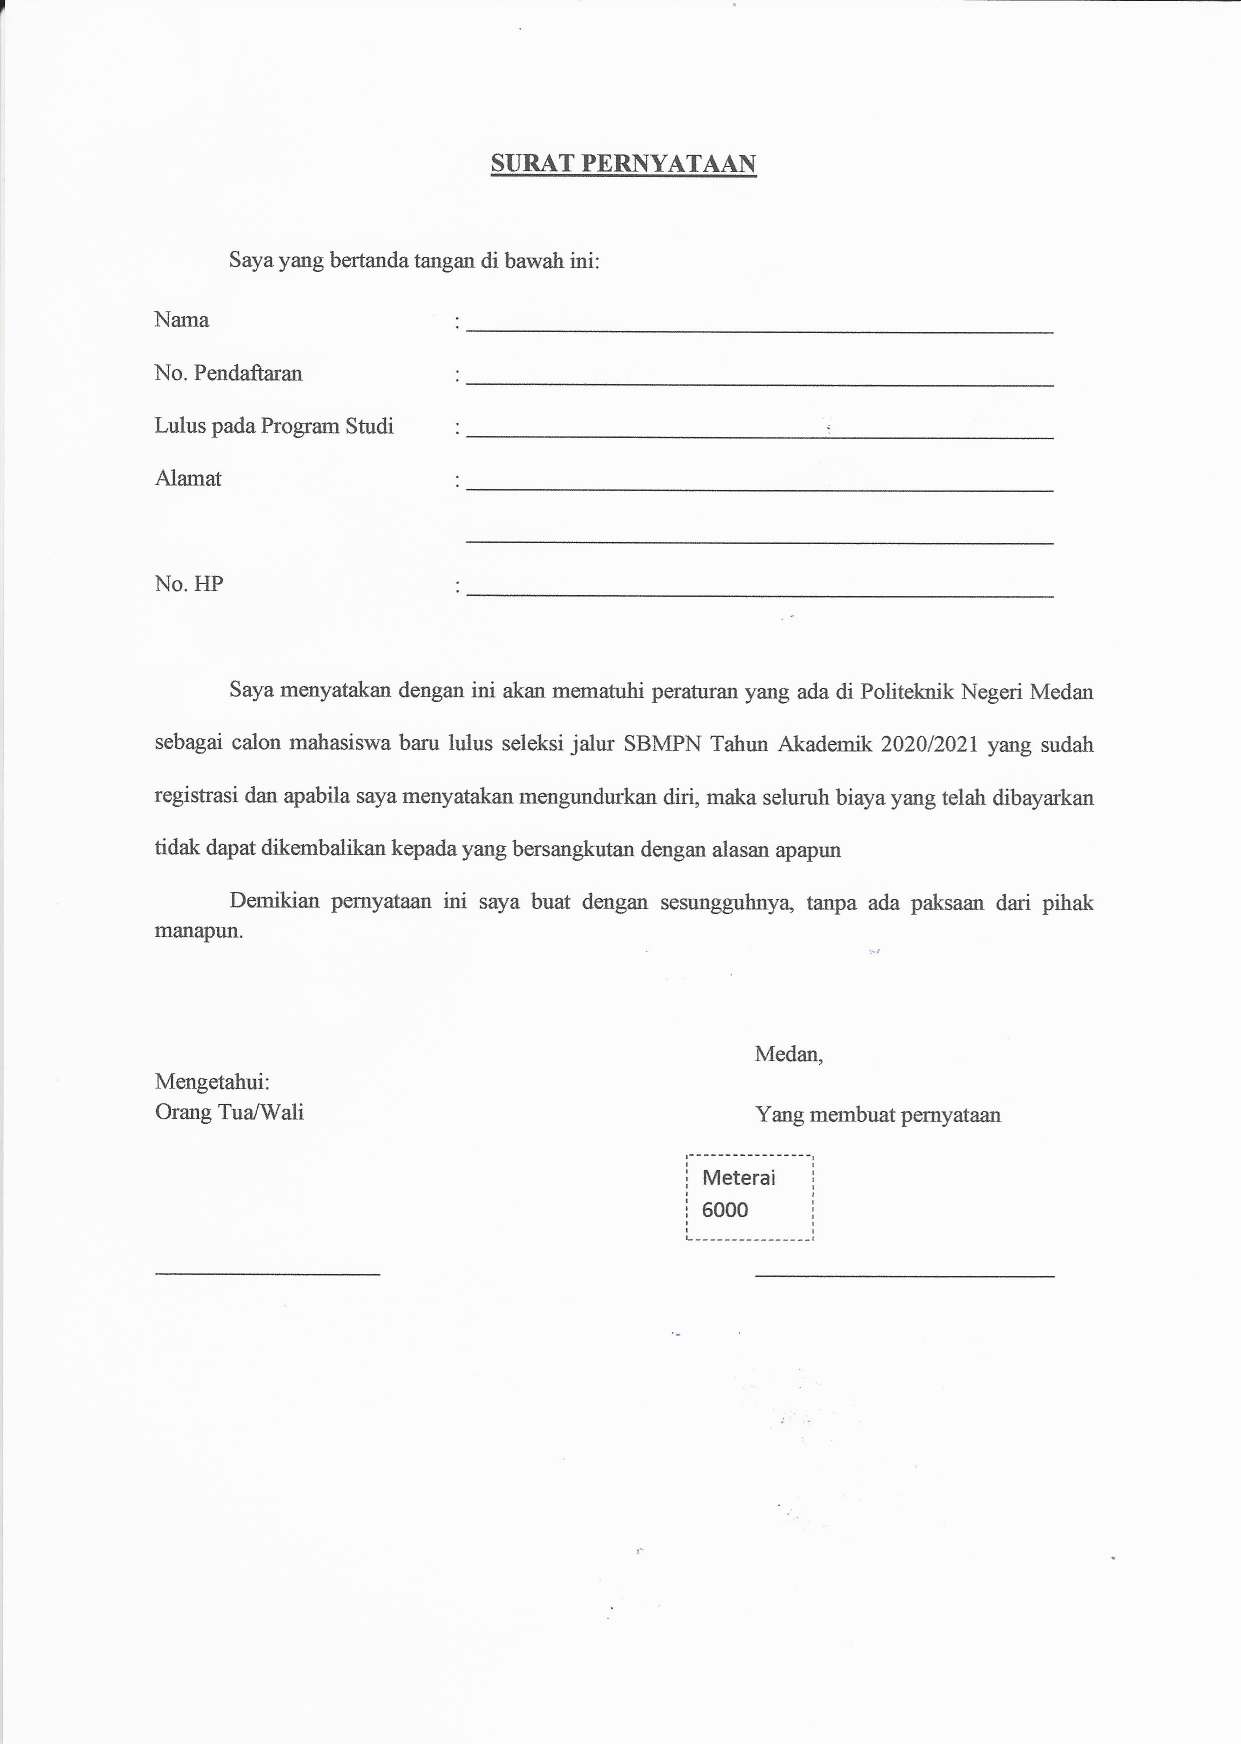 Surat Pernyataan Pengumuman Format Surat Pernyataan Bagi Calon Mahasiswa Baru Politeknik Negeri Medan Jalur Sbmpn Tahun Akademik 2020 2021 Politeknik Negeri Medan